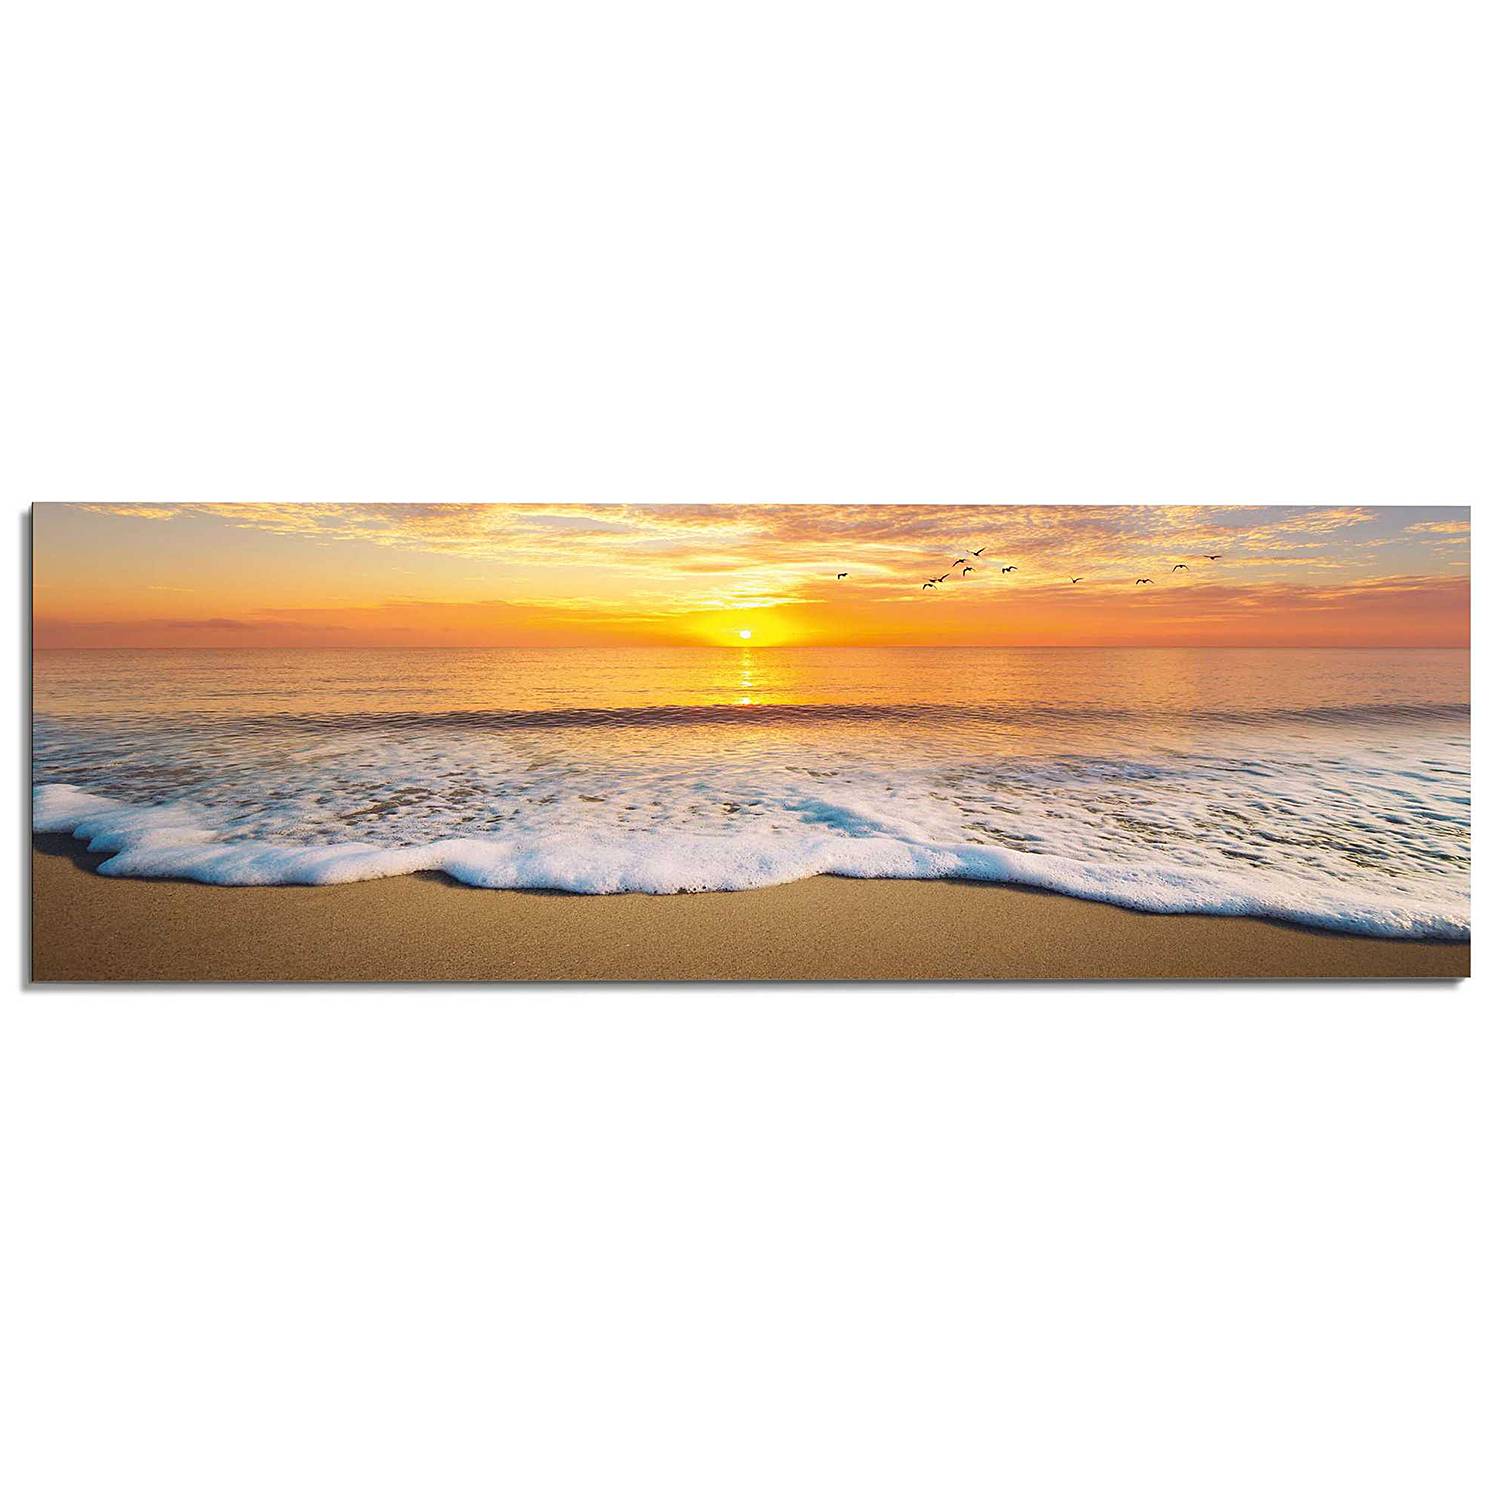 Wandbild Sonnenuntergang kaufen | home24